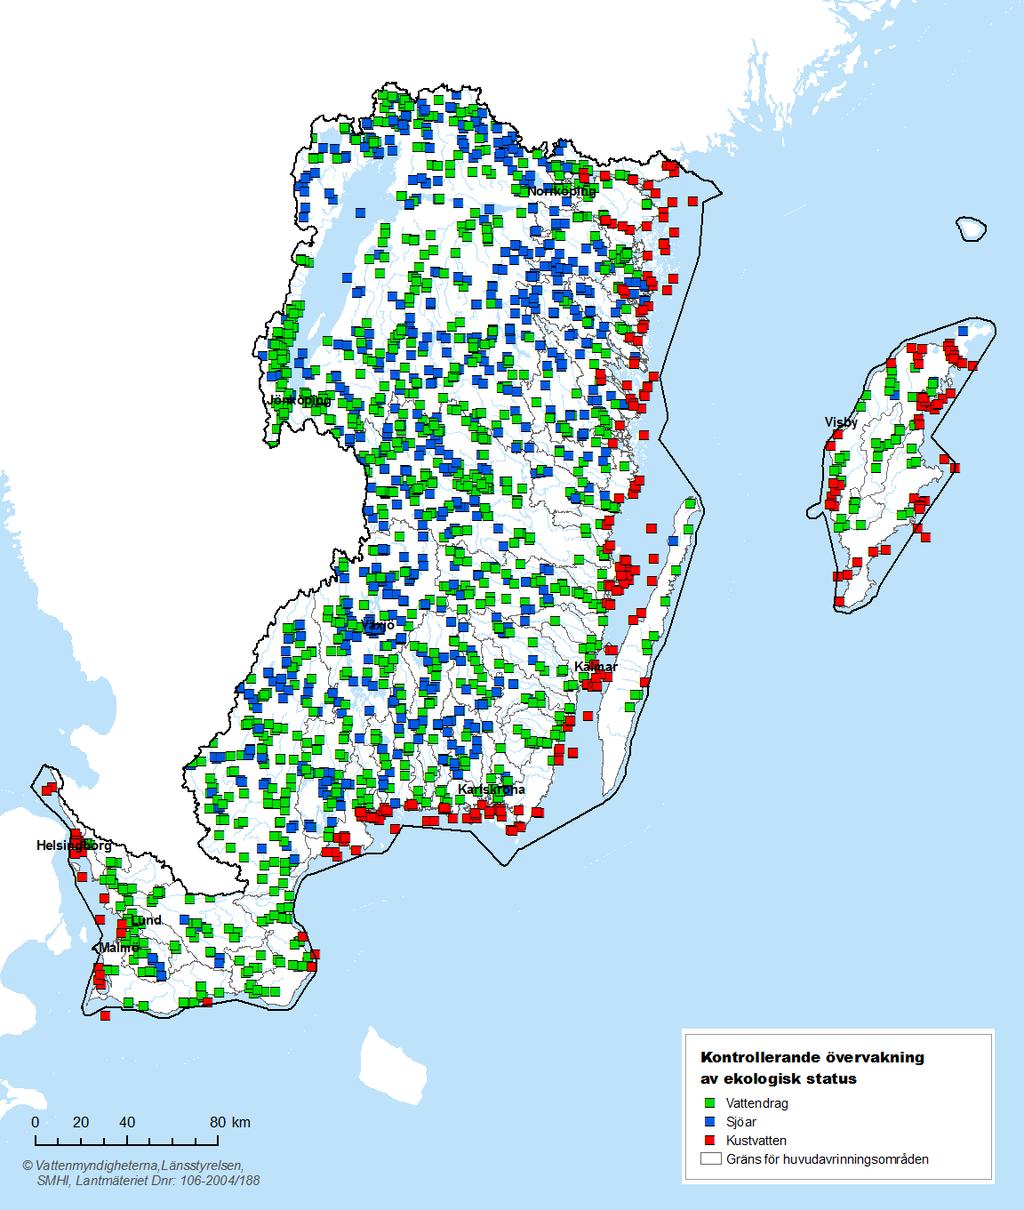 Karta 3.4. Kontrollerande övervakning av ekologisk status i Södra Östersjöns vattendistrikt, per ytvattenkategori.